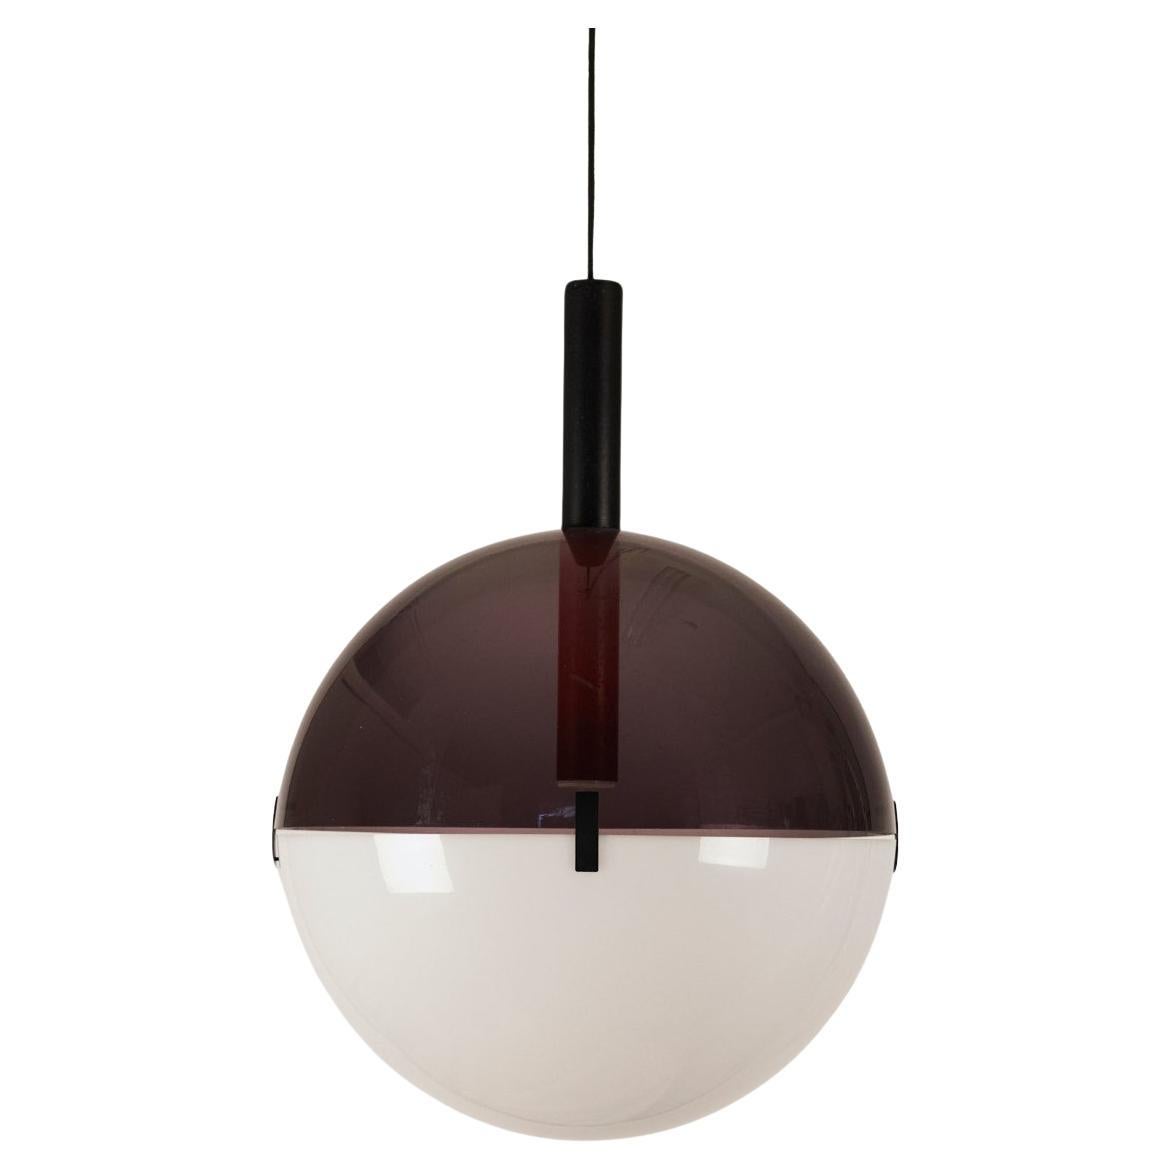 Lampe suspendue en plexiglas bicolore d'Elio Martinelli, 1960.